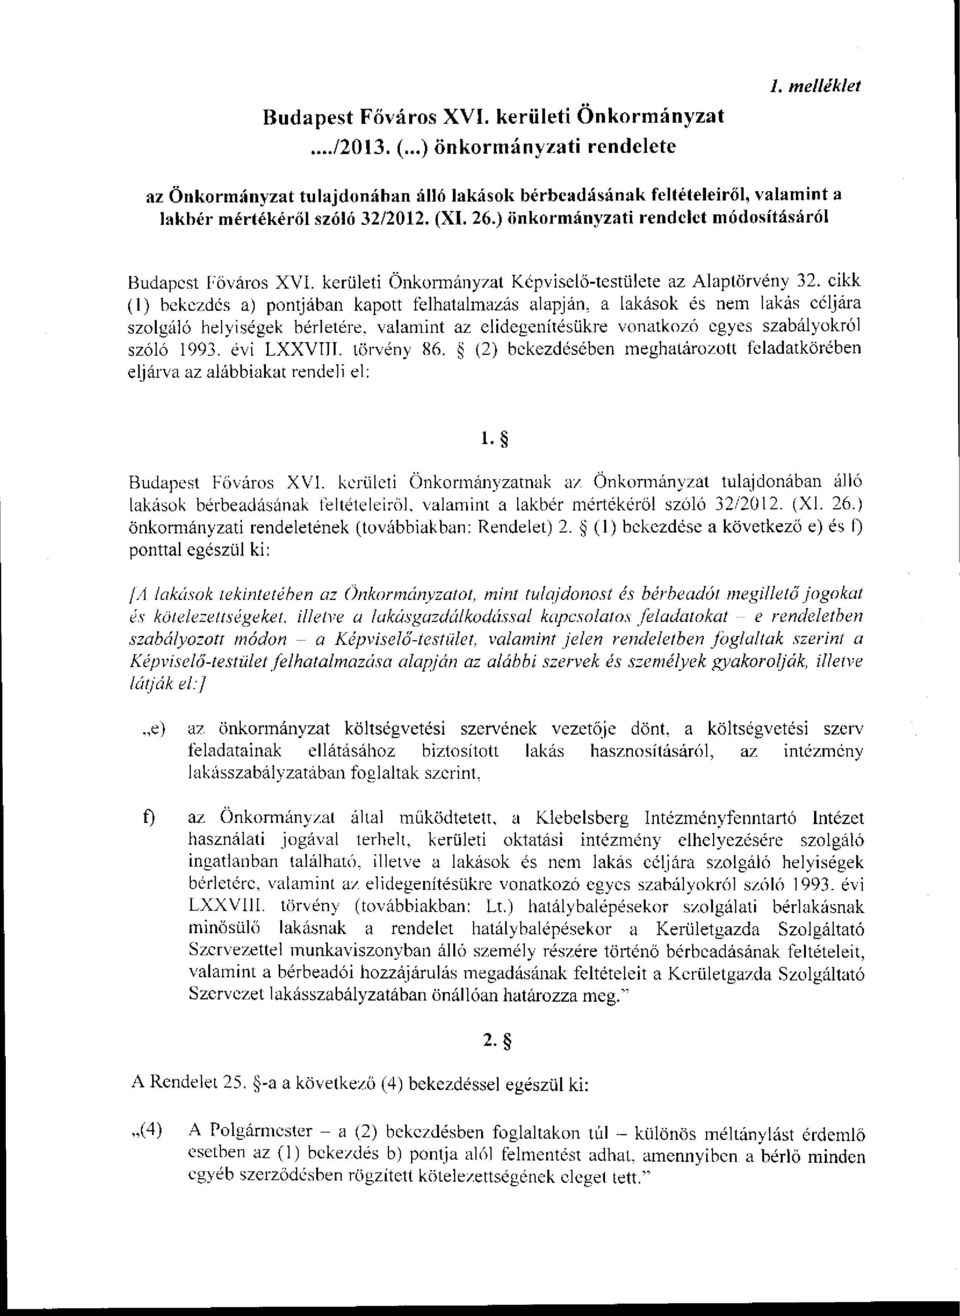 ) önkormányzati rendelet módosításáról Budapest Főváros XVI. kerületi Önkormányzat Képviselő-testülete az Alaptörvény 32.